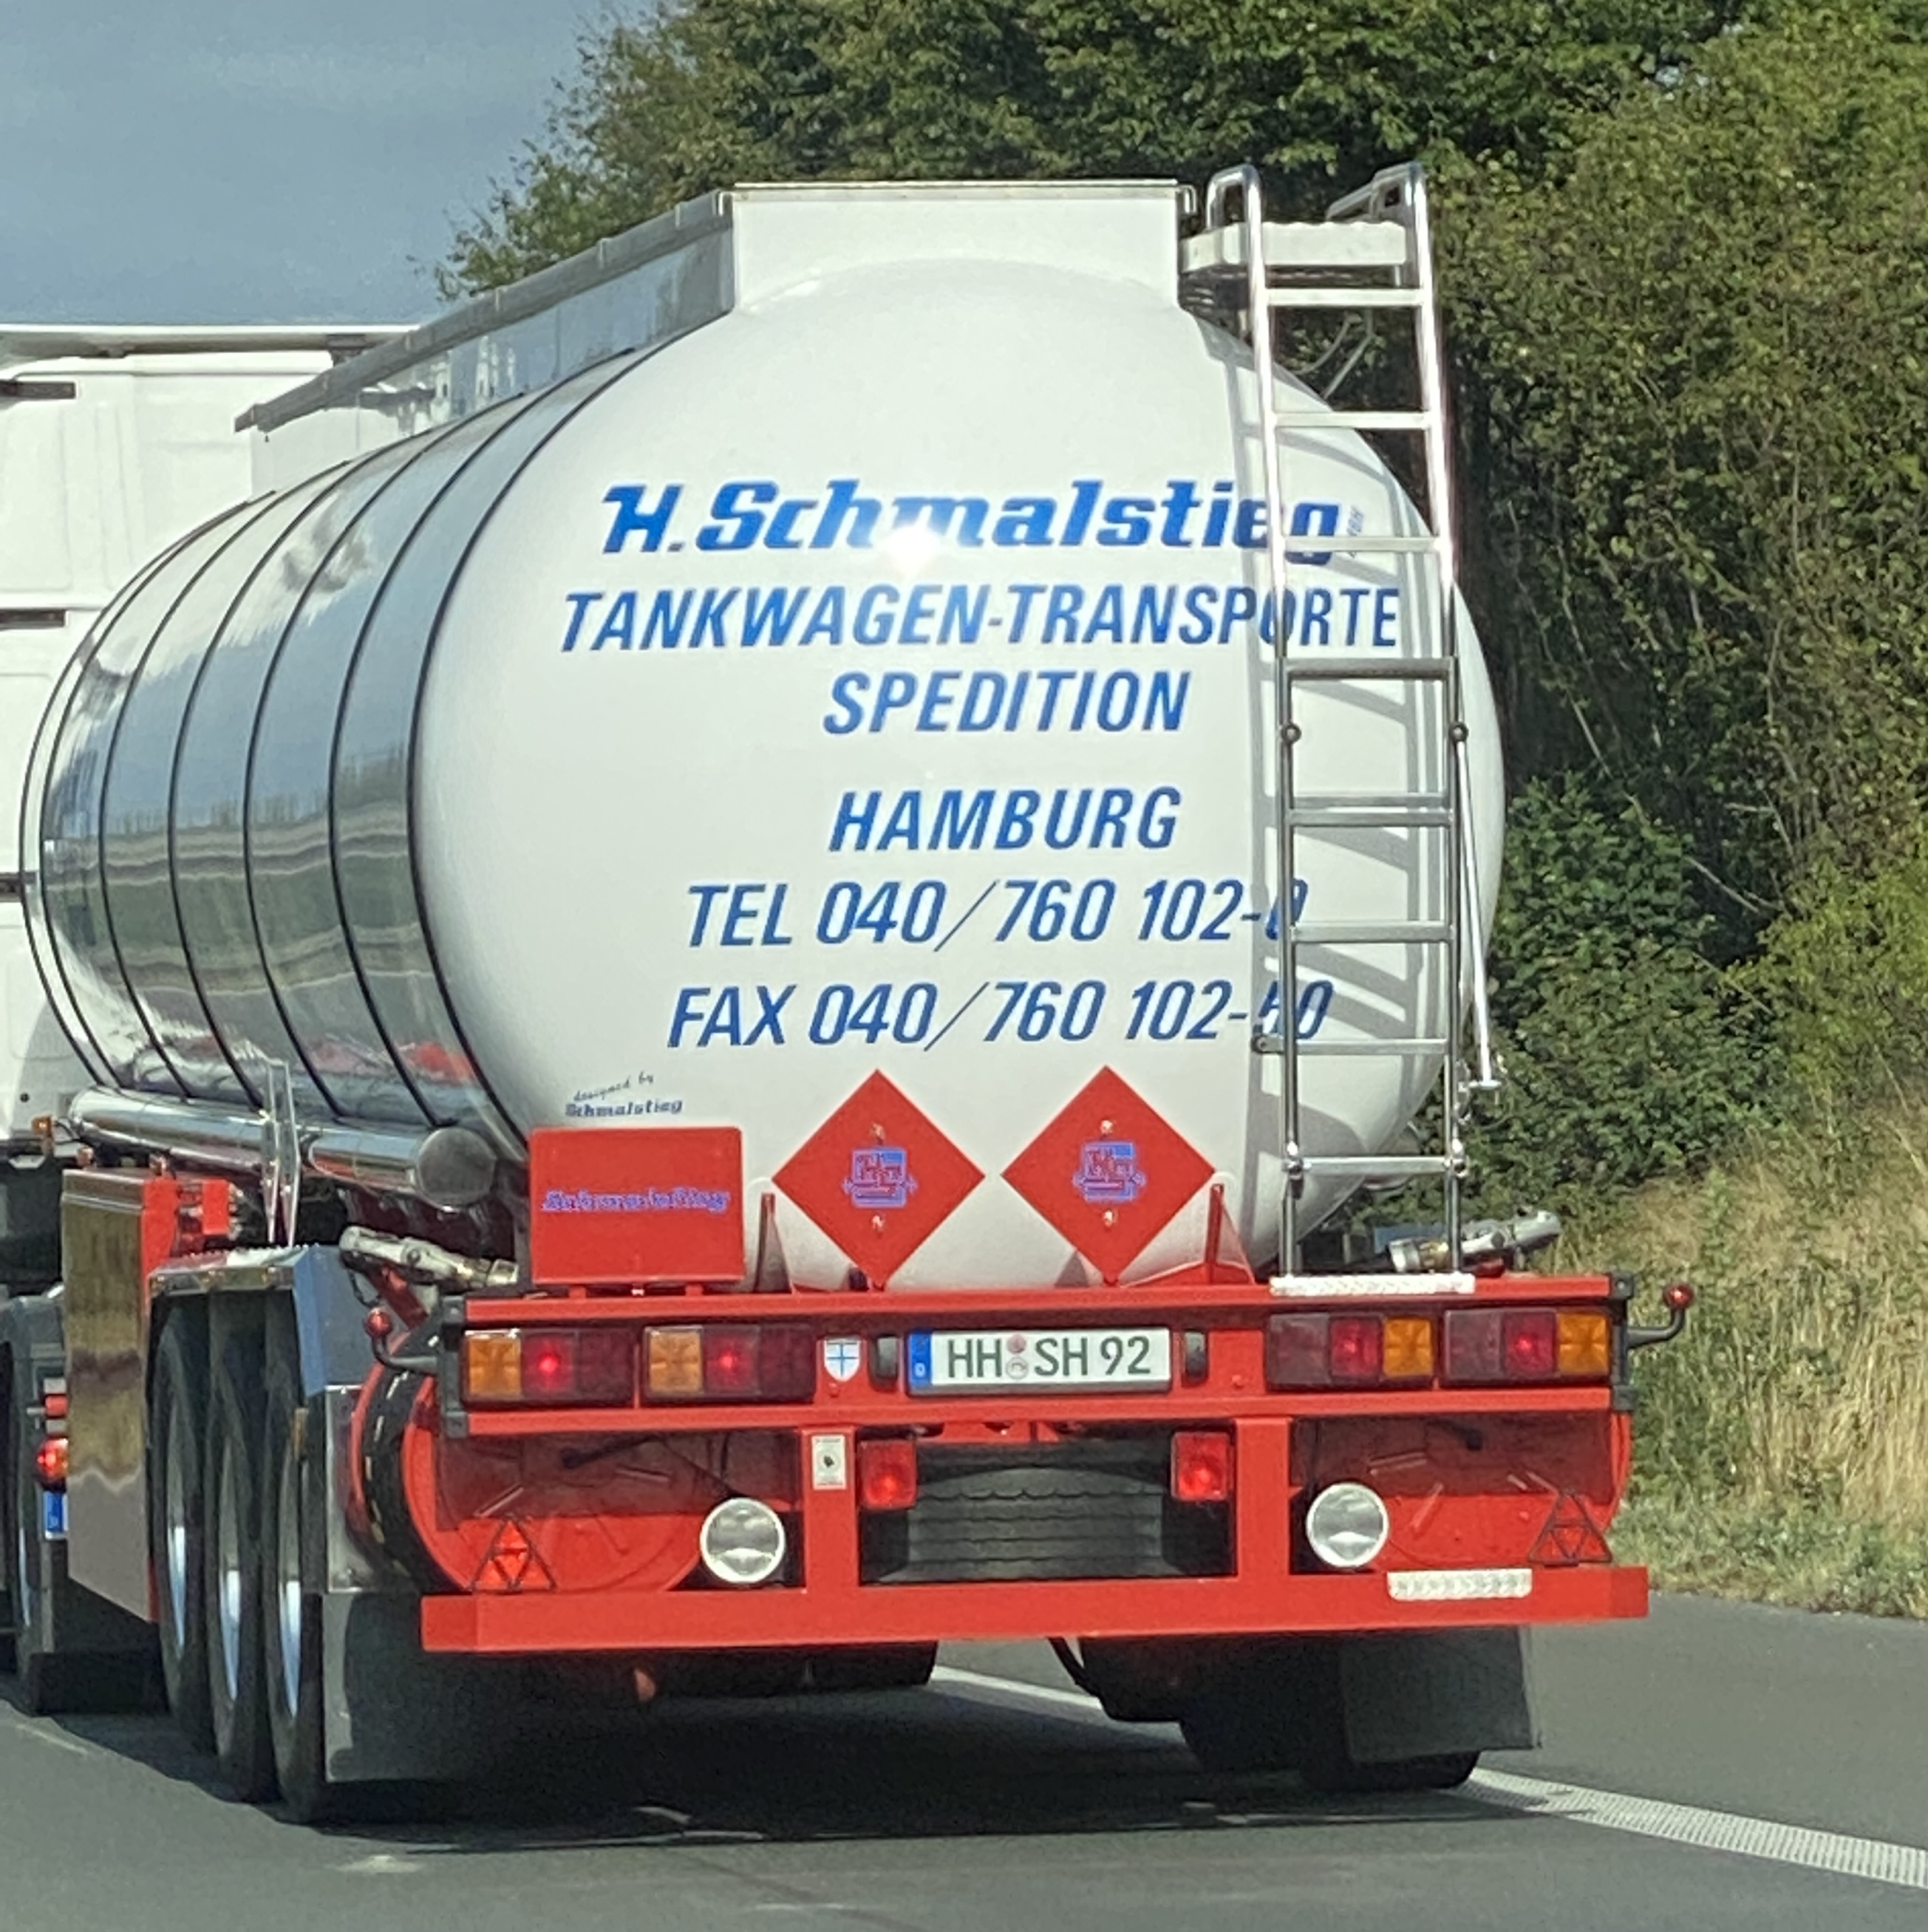 Bild 1 Heinrich Schmalstieg Tankwagentransporte und Spedition GmbH in Hamburg